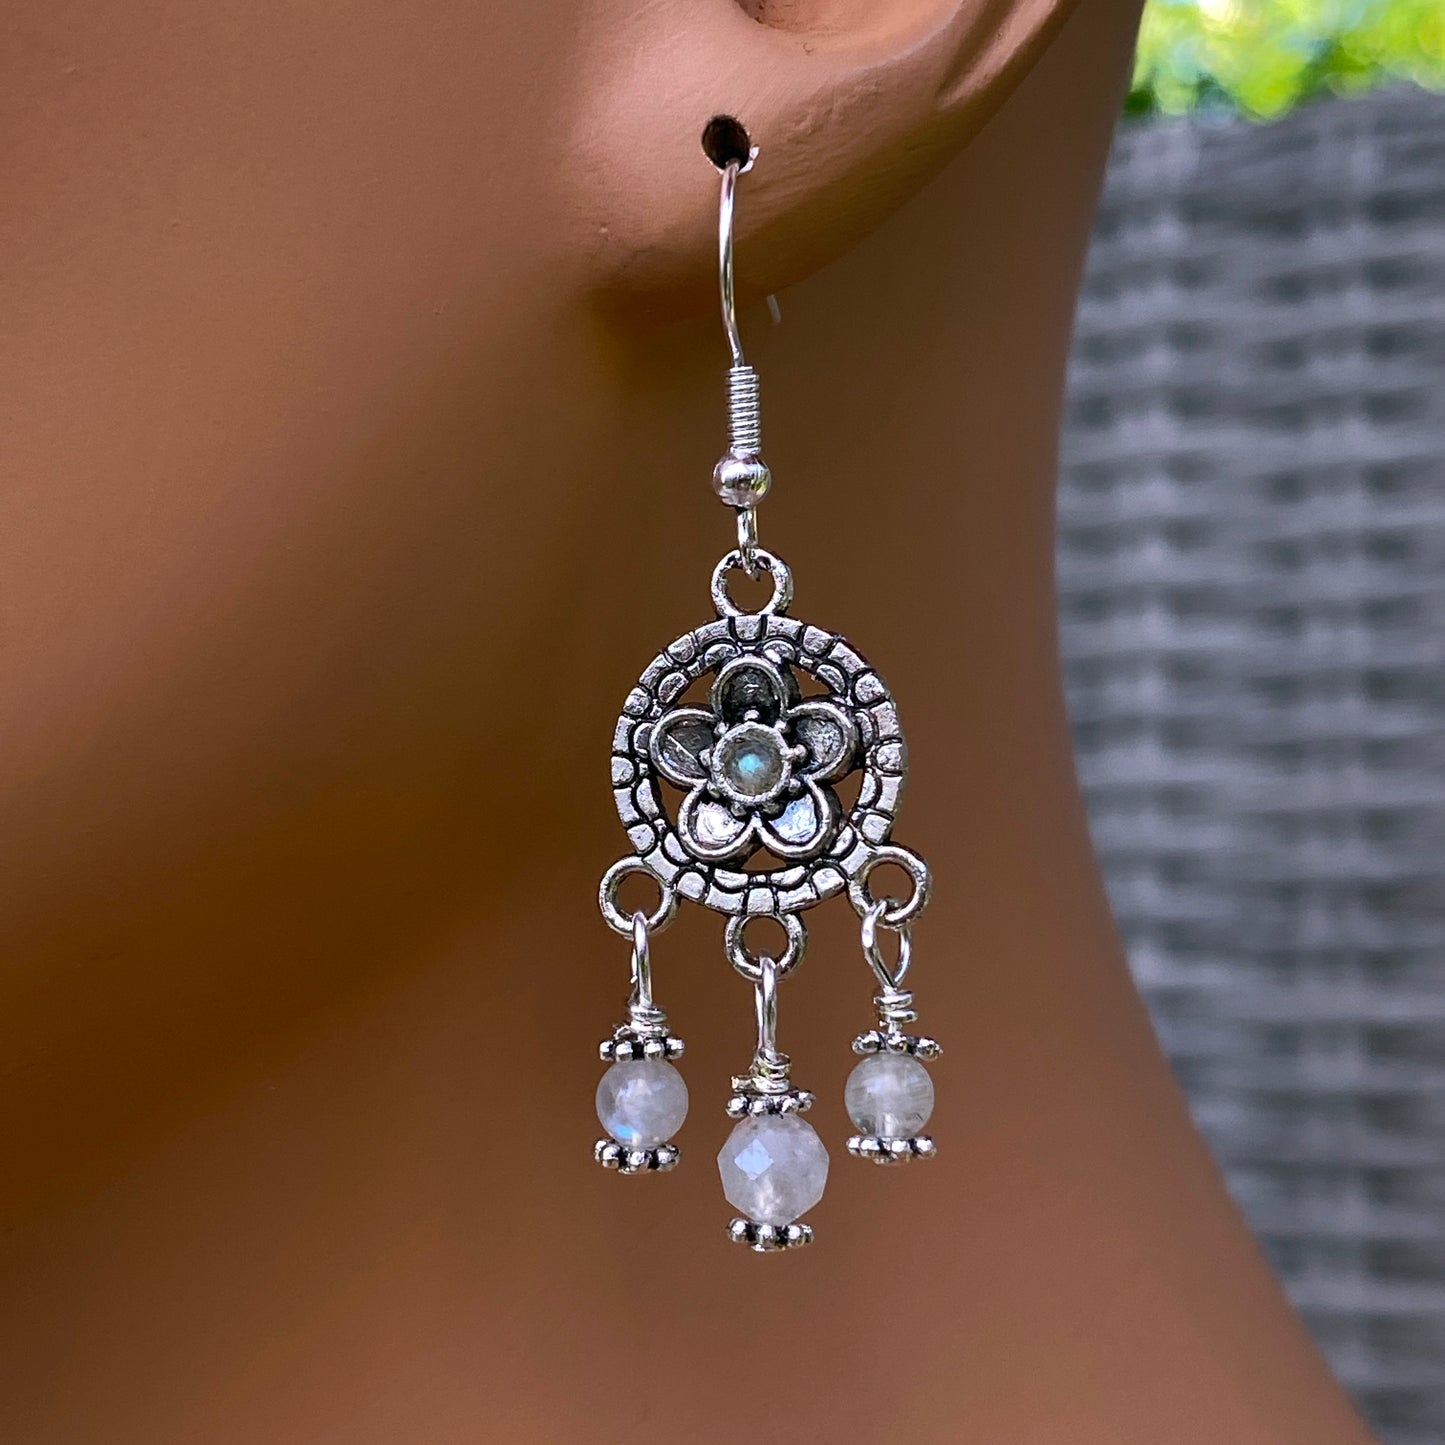 Moonstone Chandelier earrings